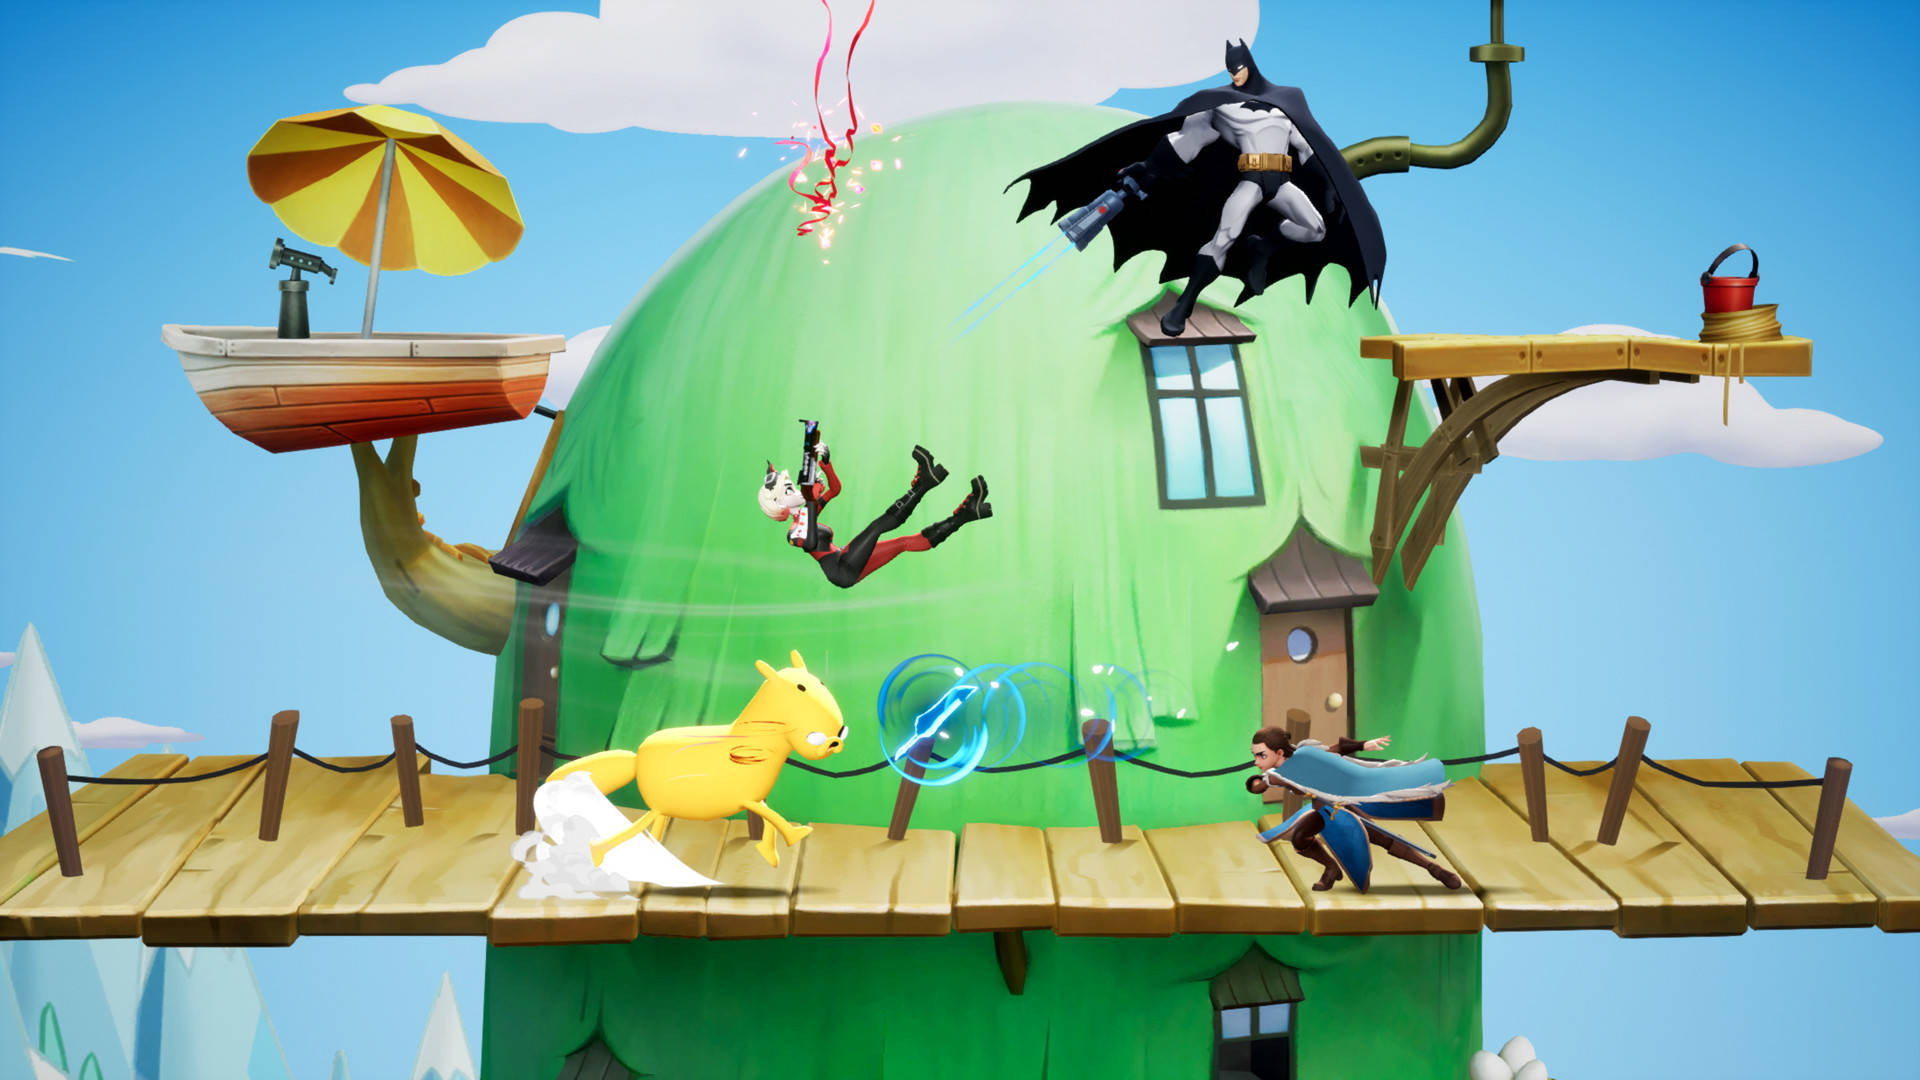 Liste des niveaux multiversus : plusieurs personnages se battant près d'une cabane dans les arbres dans l'univers Adventure Time.  Jake est un cheval, Batman pointe une arme sur Harley Quinn qui tire des confettis et Arya Stark lance un poignard sur Jake.